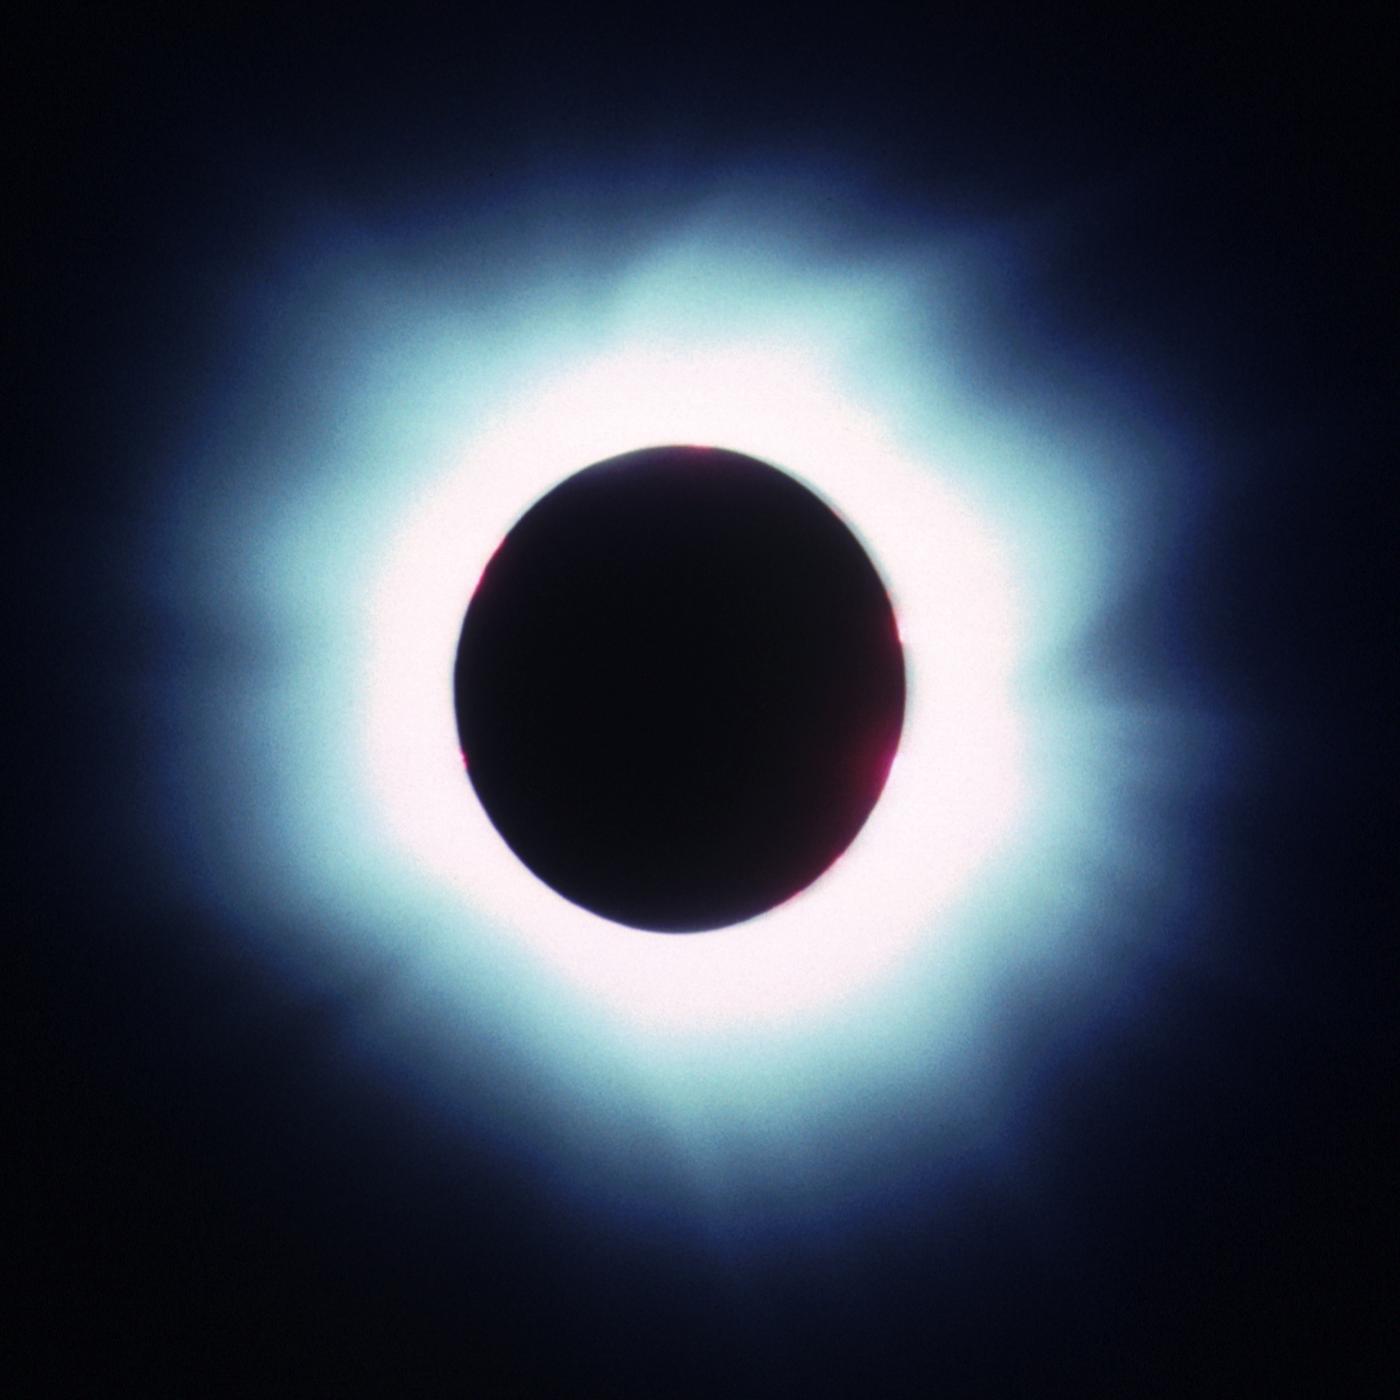 Large size eclipse image